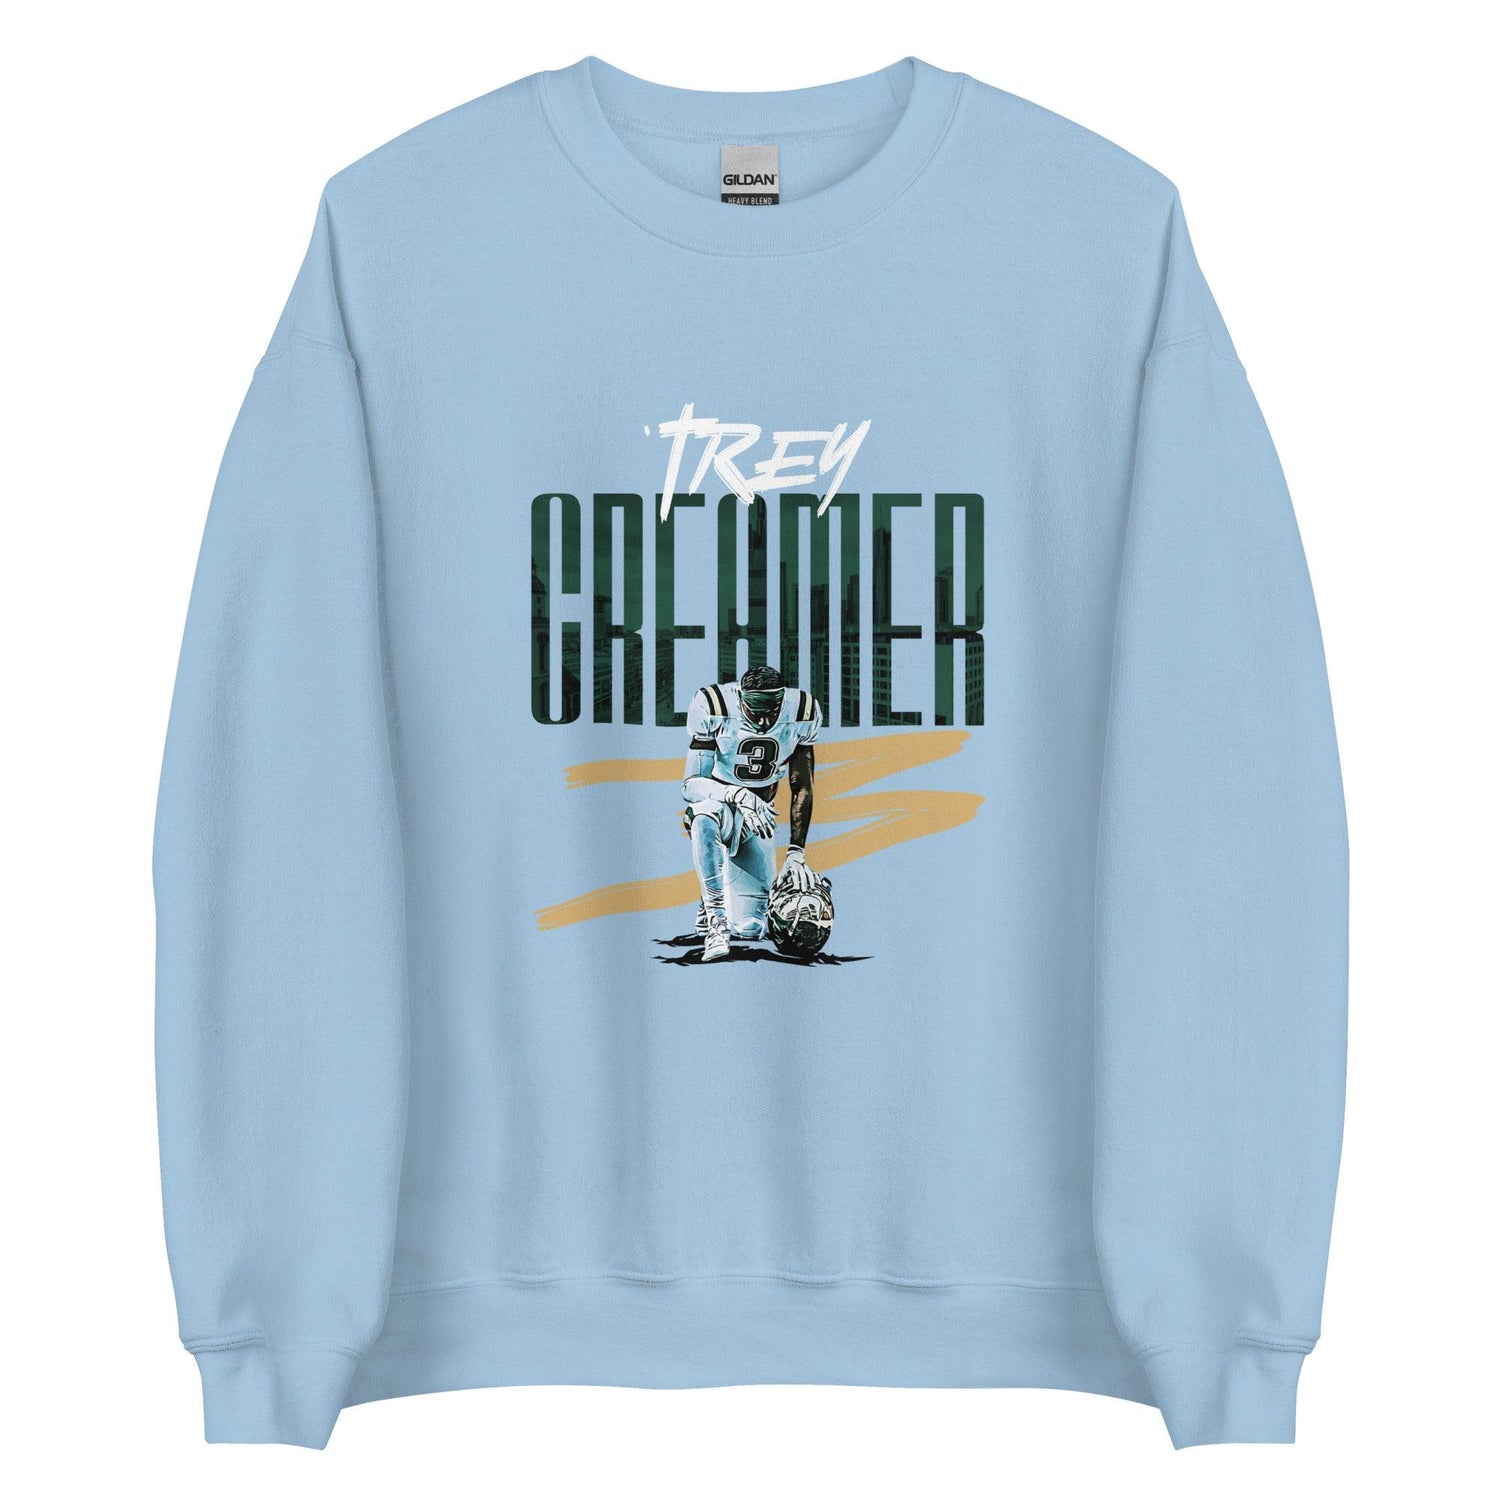 Trey Creamer "Gameday" Sweatshirt - Fan Arch